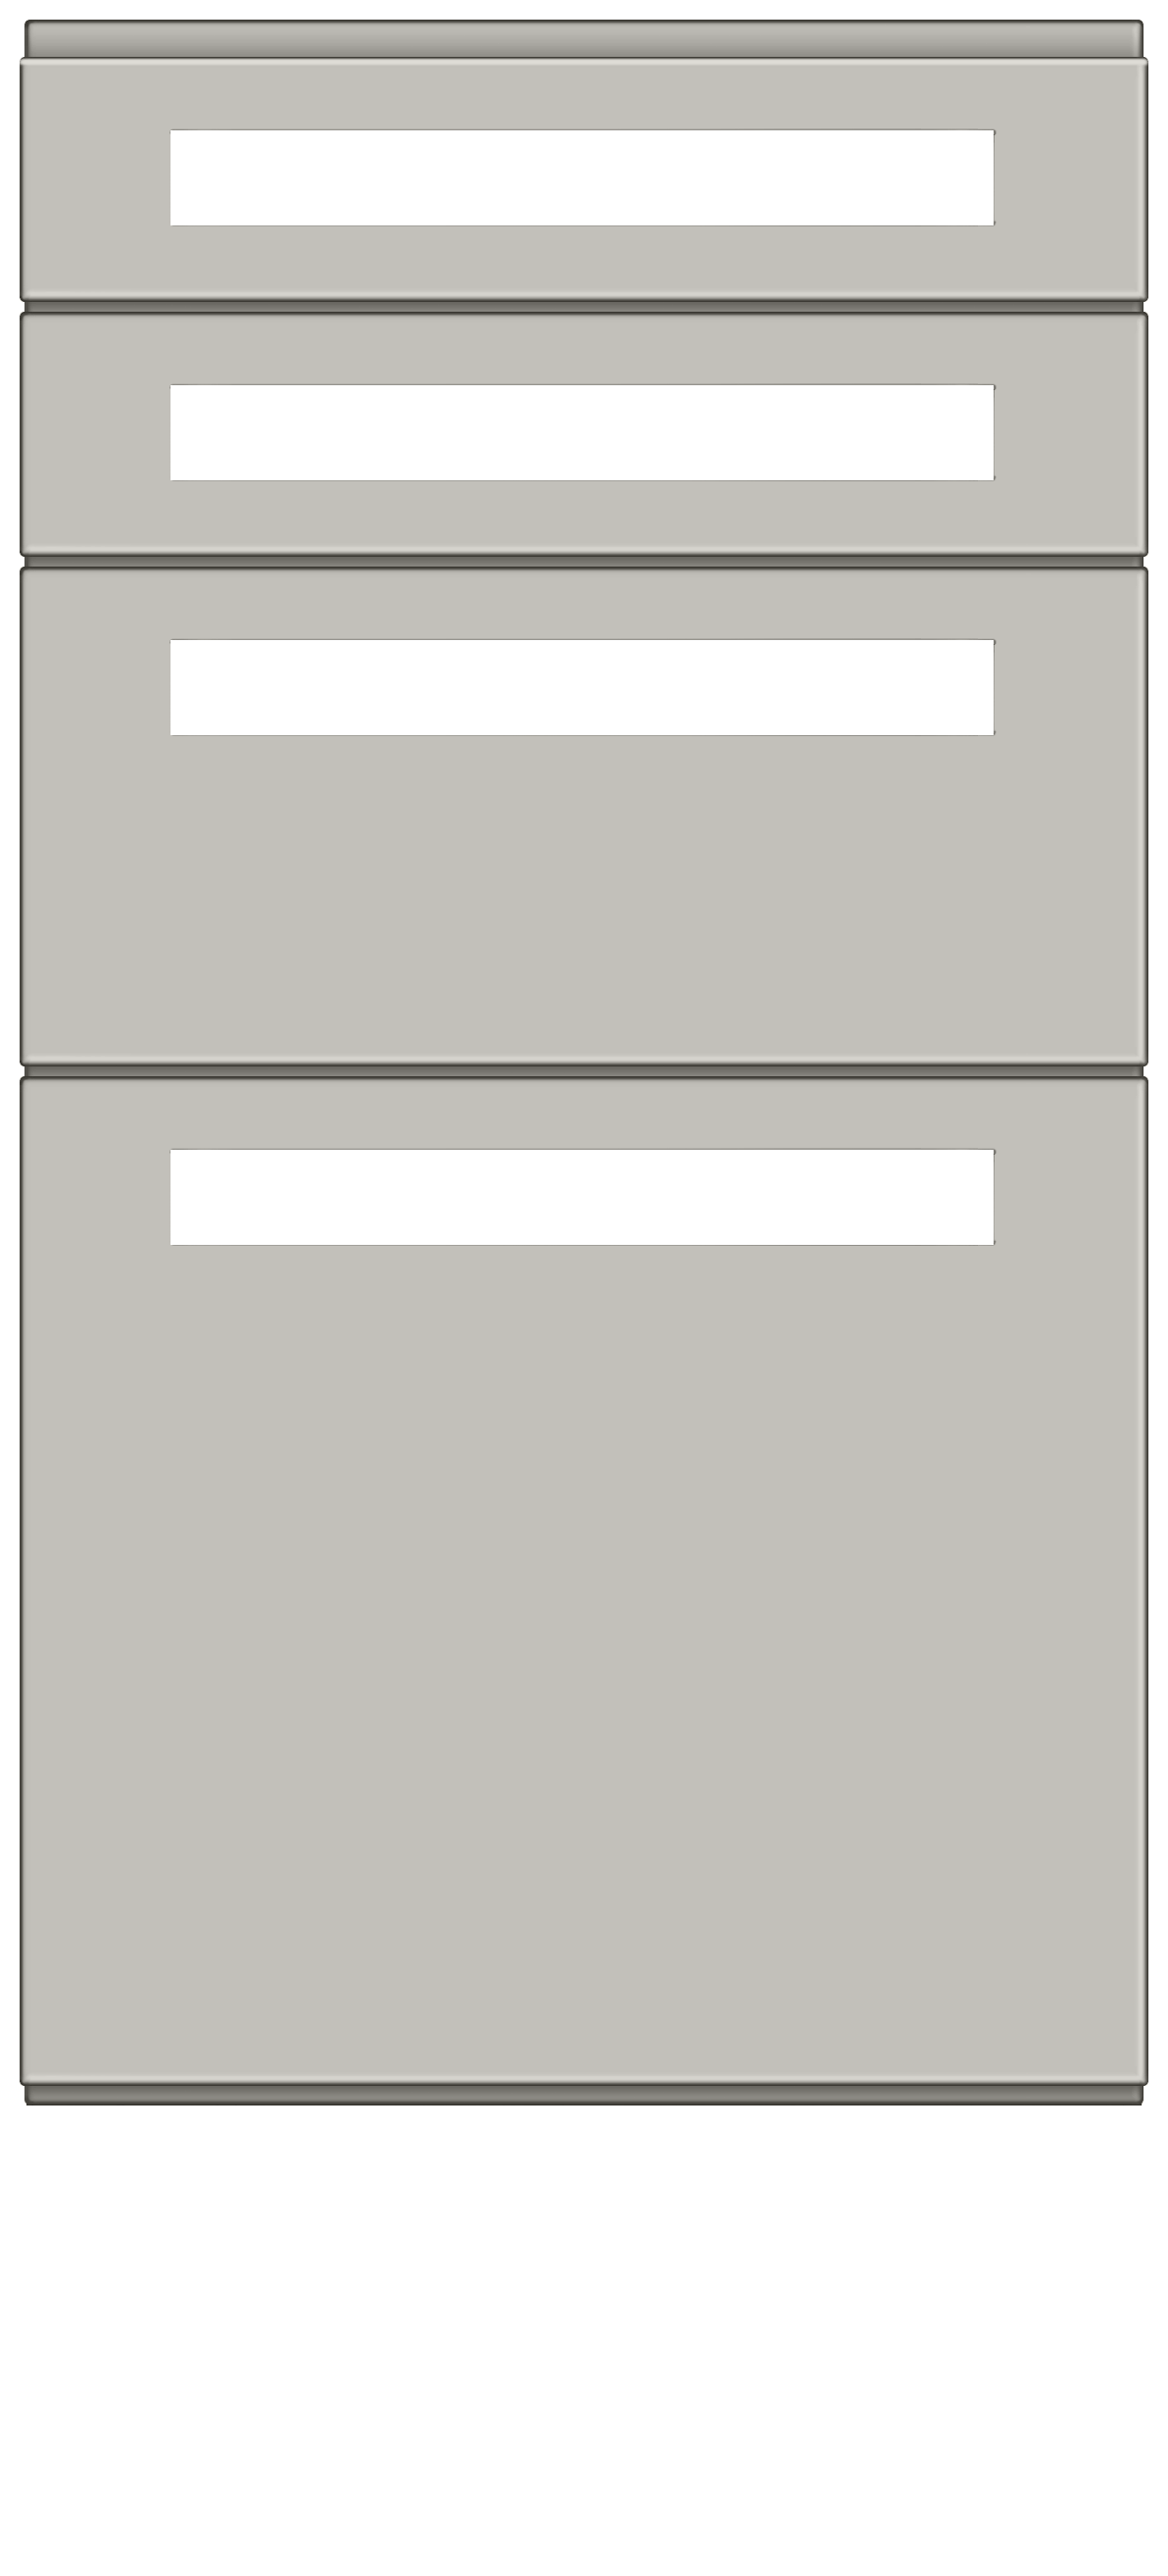 Base Cabinet